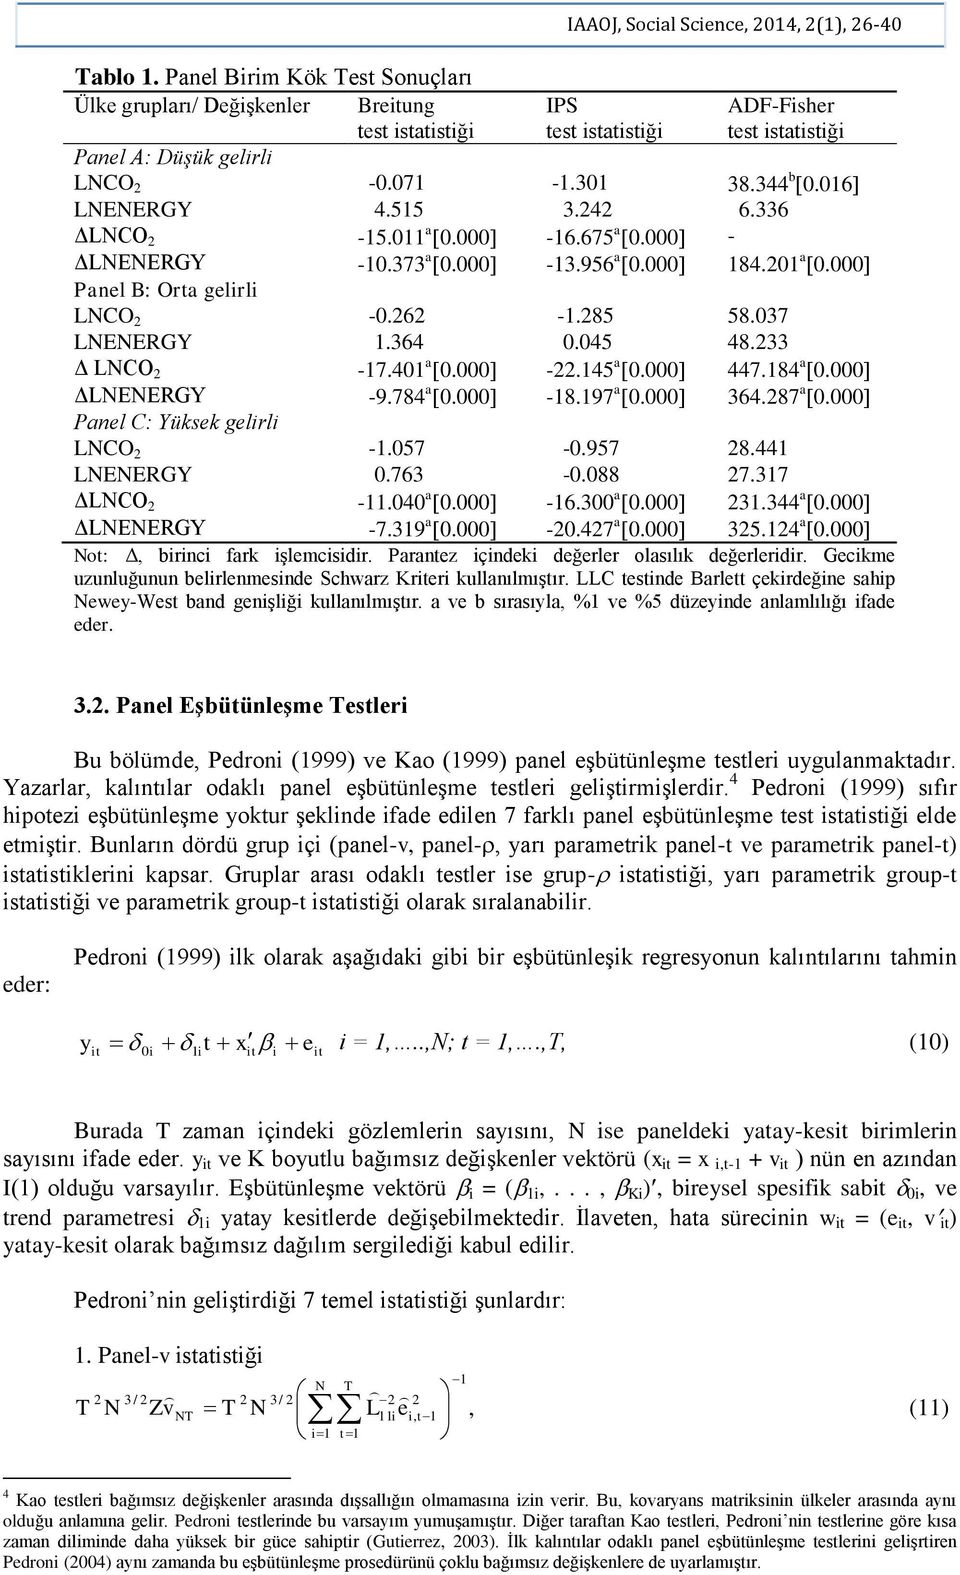 Panel C: Yüksek gelrl LCO -.57 -.957 8.44 LEERGY.763 -.88 7.37 ΔLCO -.4 a. -6.3 a. 3.344 a. ΔLEERGY -7.39 a. -.47 a. 35.4 a. o: Δ, brnc fark şlemcsdr. Paranez çndek değerler olasılık değerlerdr.